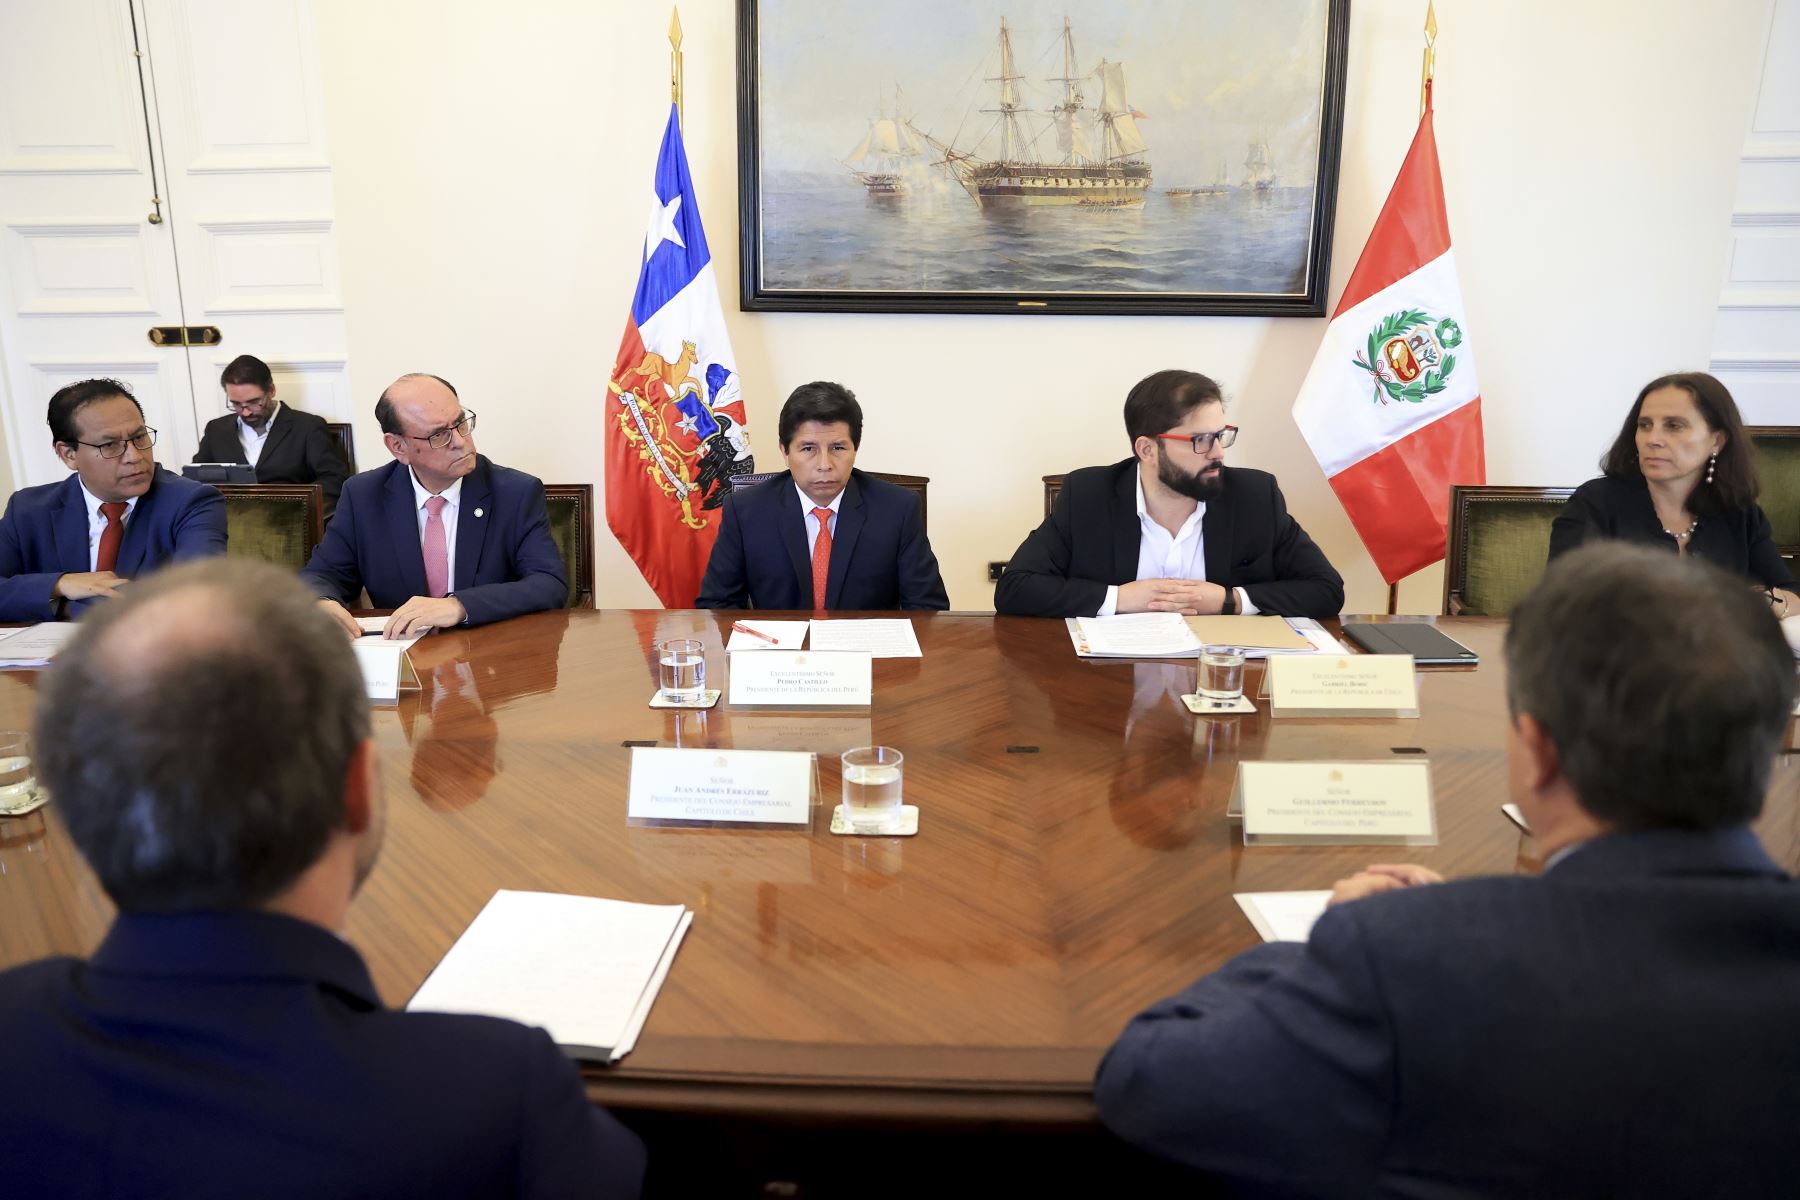 Presidente Pedro Castillo Terrones se reúne con representantes del Consejo Empresarial Perú-Chile.

Foto:ANDINA/Presidencia